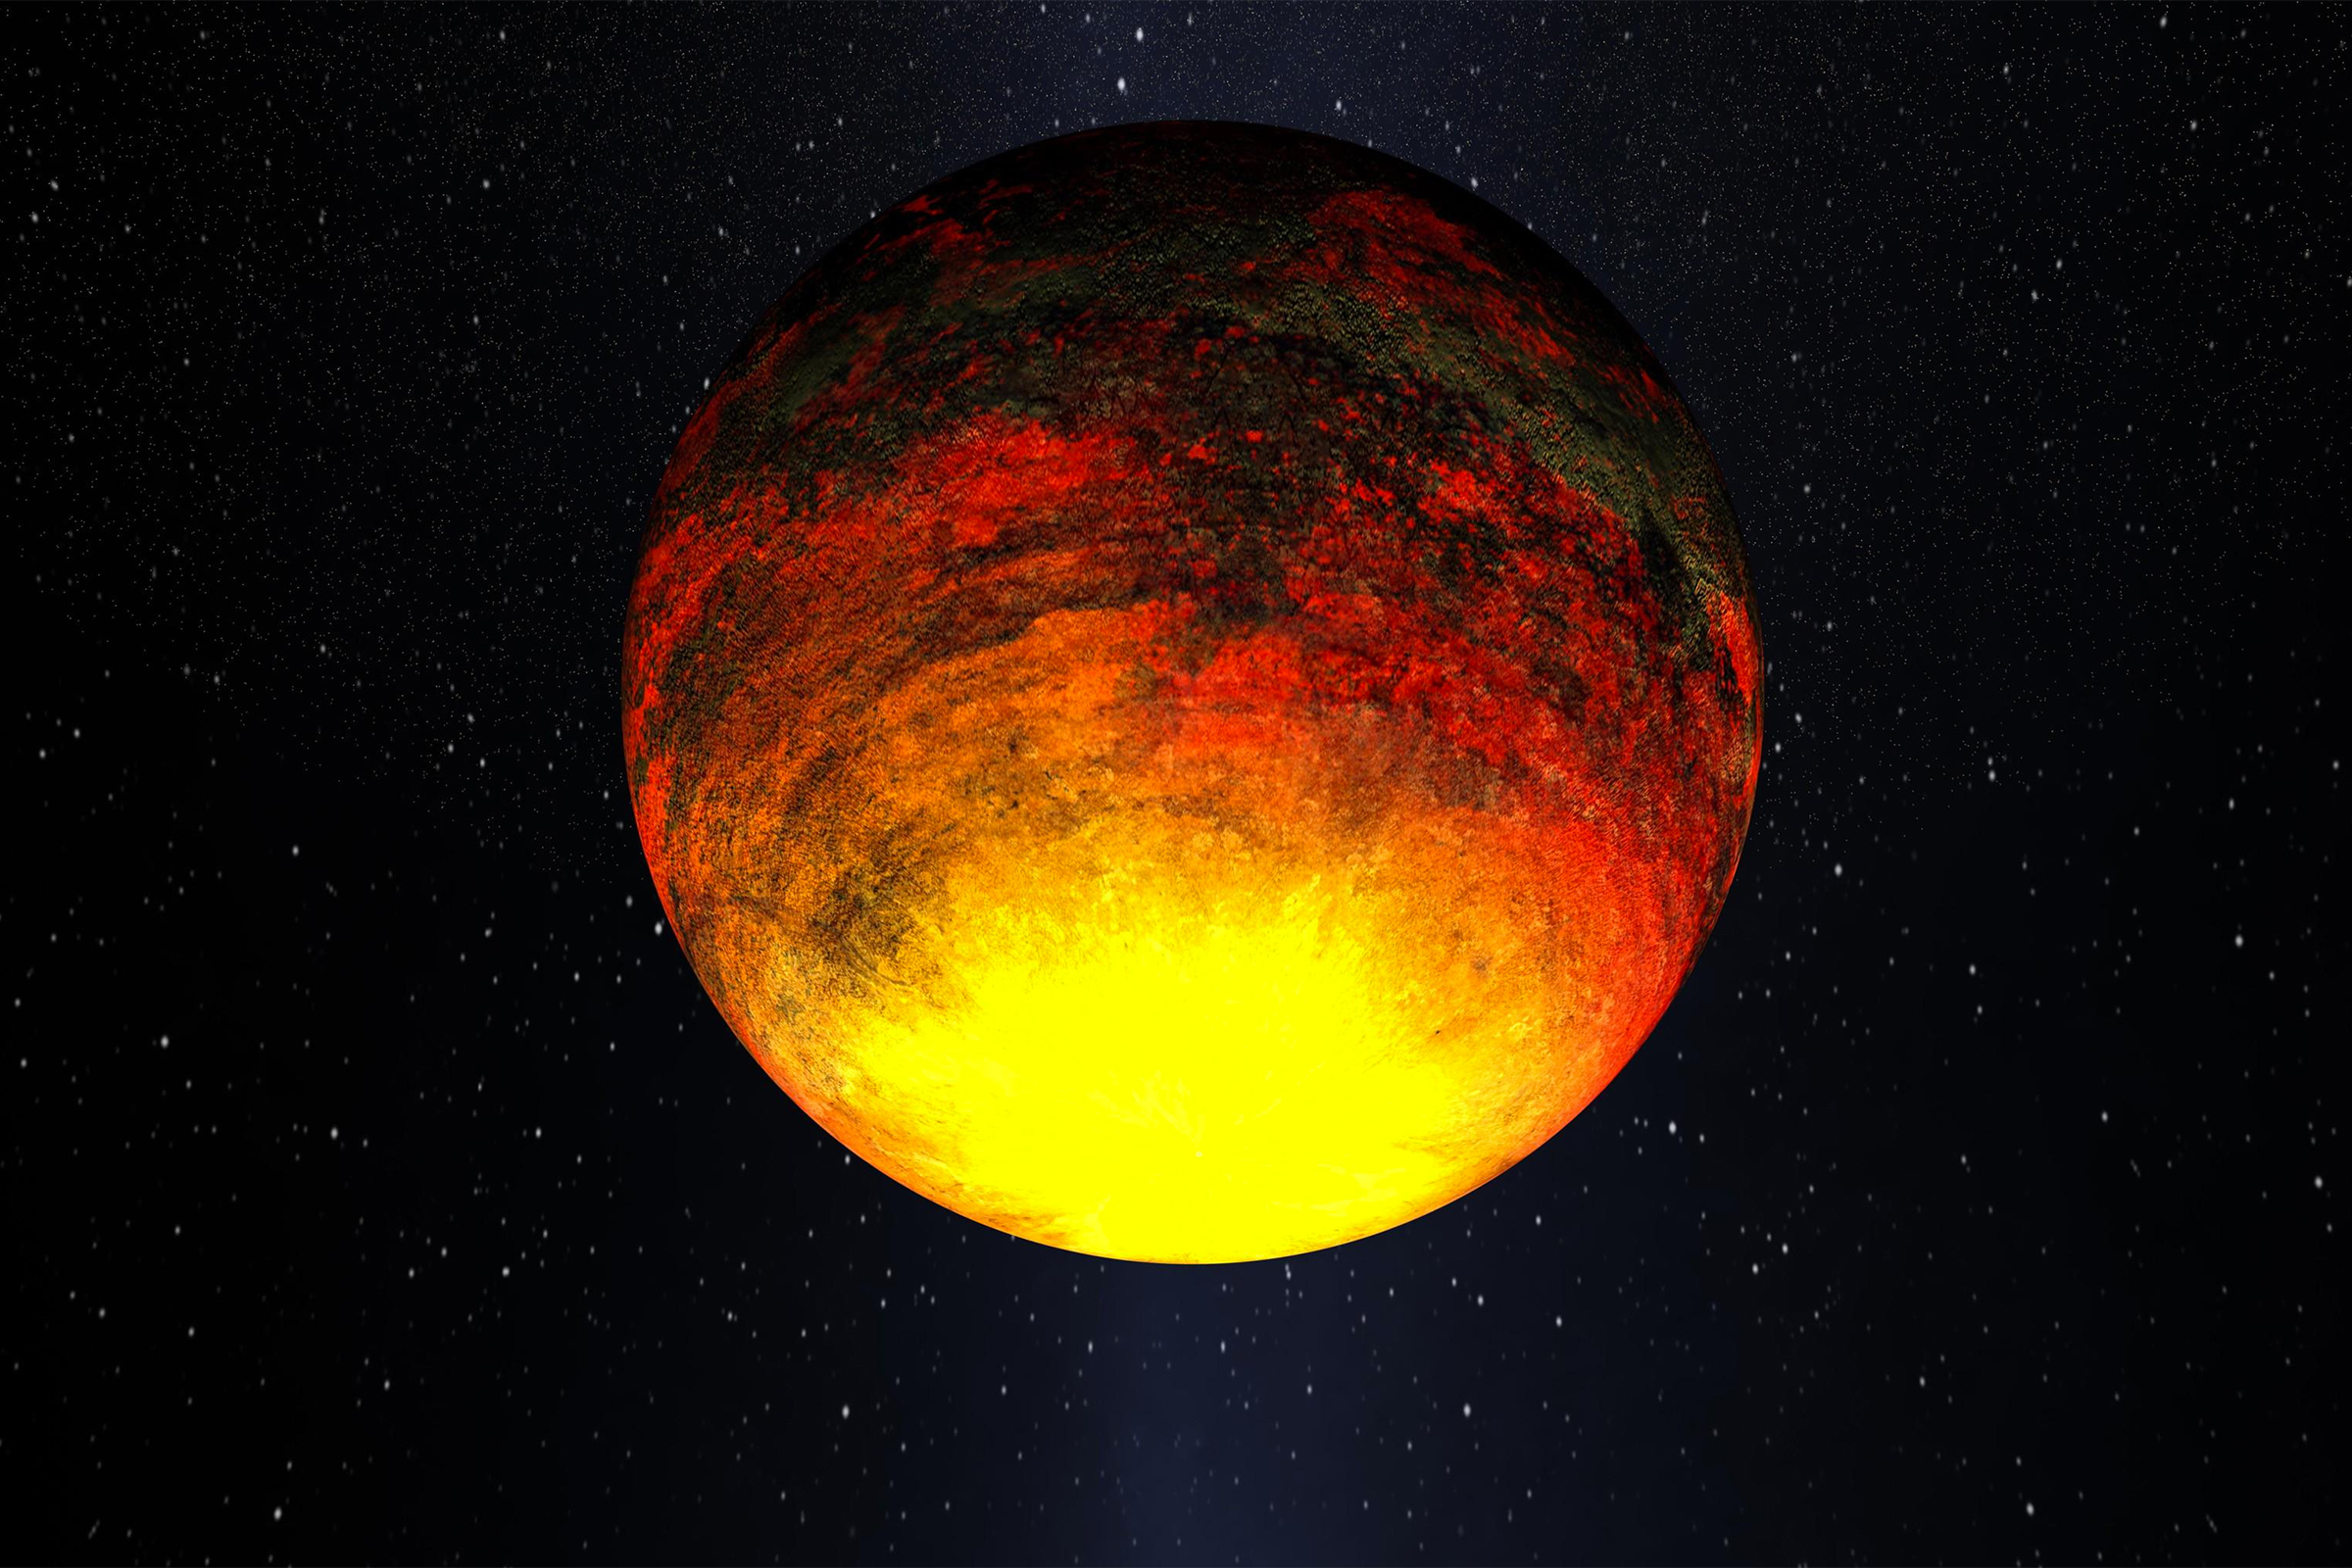 Одна из самых маленьких среди обнаруженных экзопланет, а также первая достоверно известная железная экзопланета. Ученые полагают, что из-за высокой температуры на поверхности планеты железо находится в расплавленном состоянии.
&nbsp;